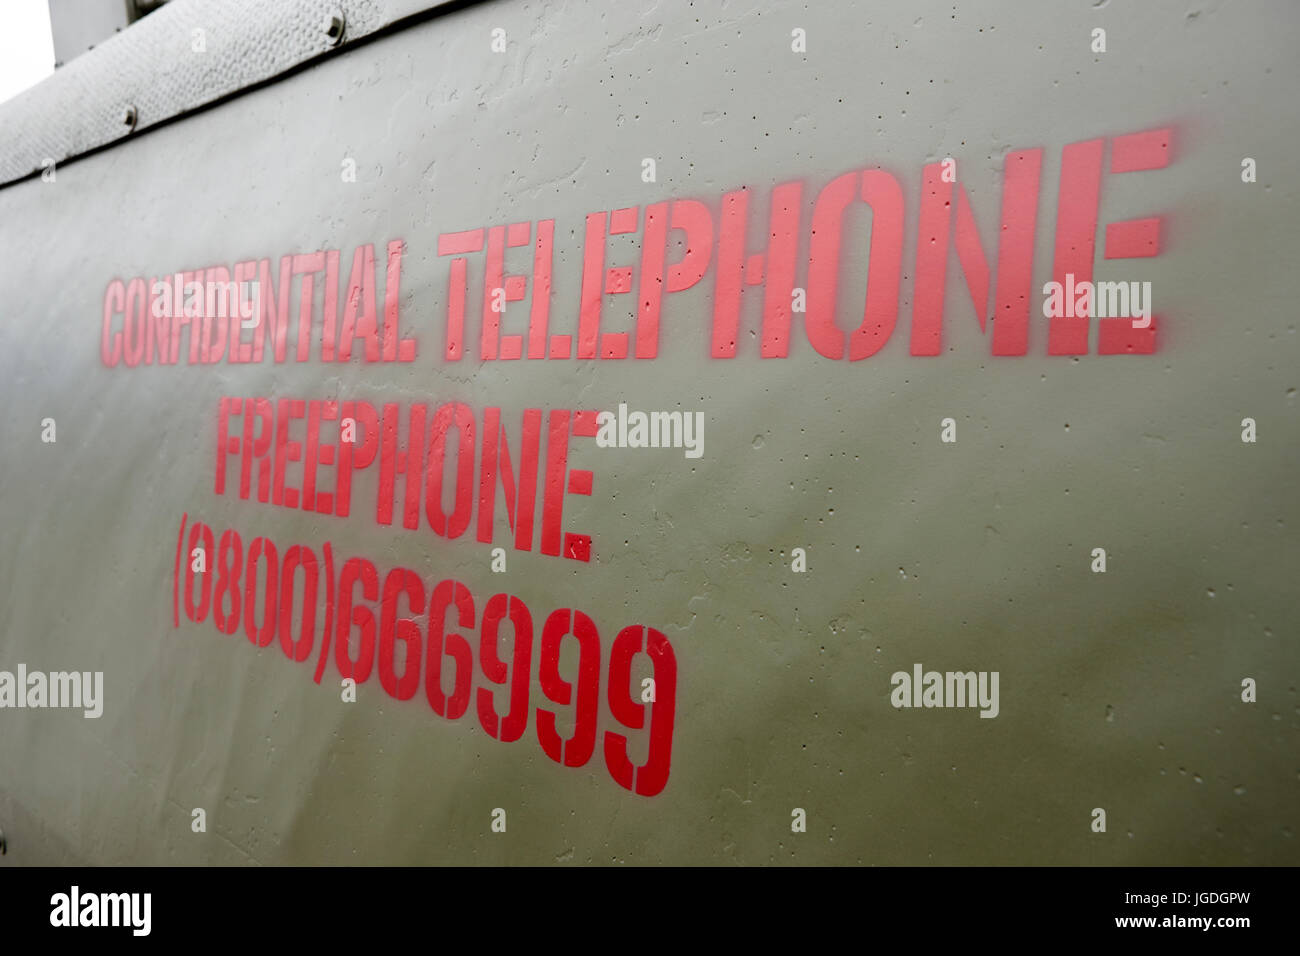 Numéro de téléphone confidentiels peint sur le côté d'un landrover de l'armée britannique en Irlande du Nord Royaume-Uni troubles Banque D'Images